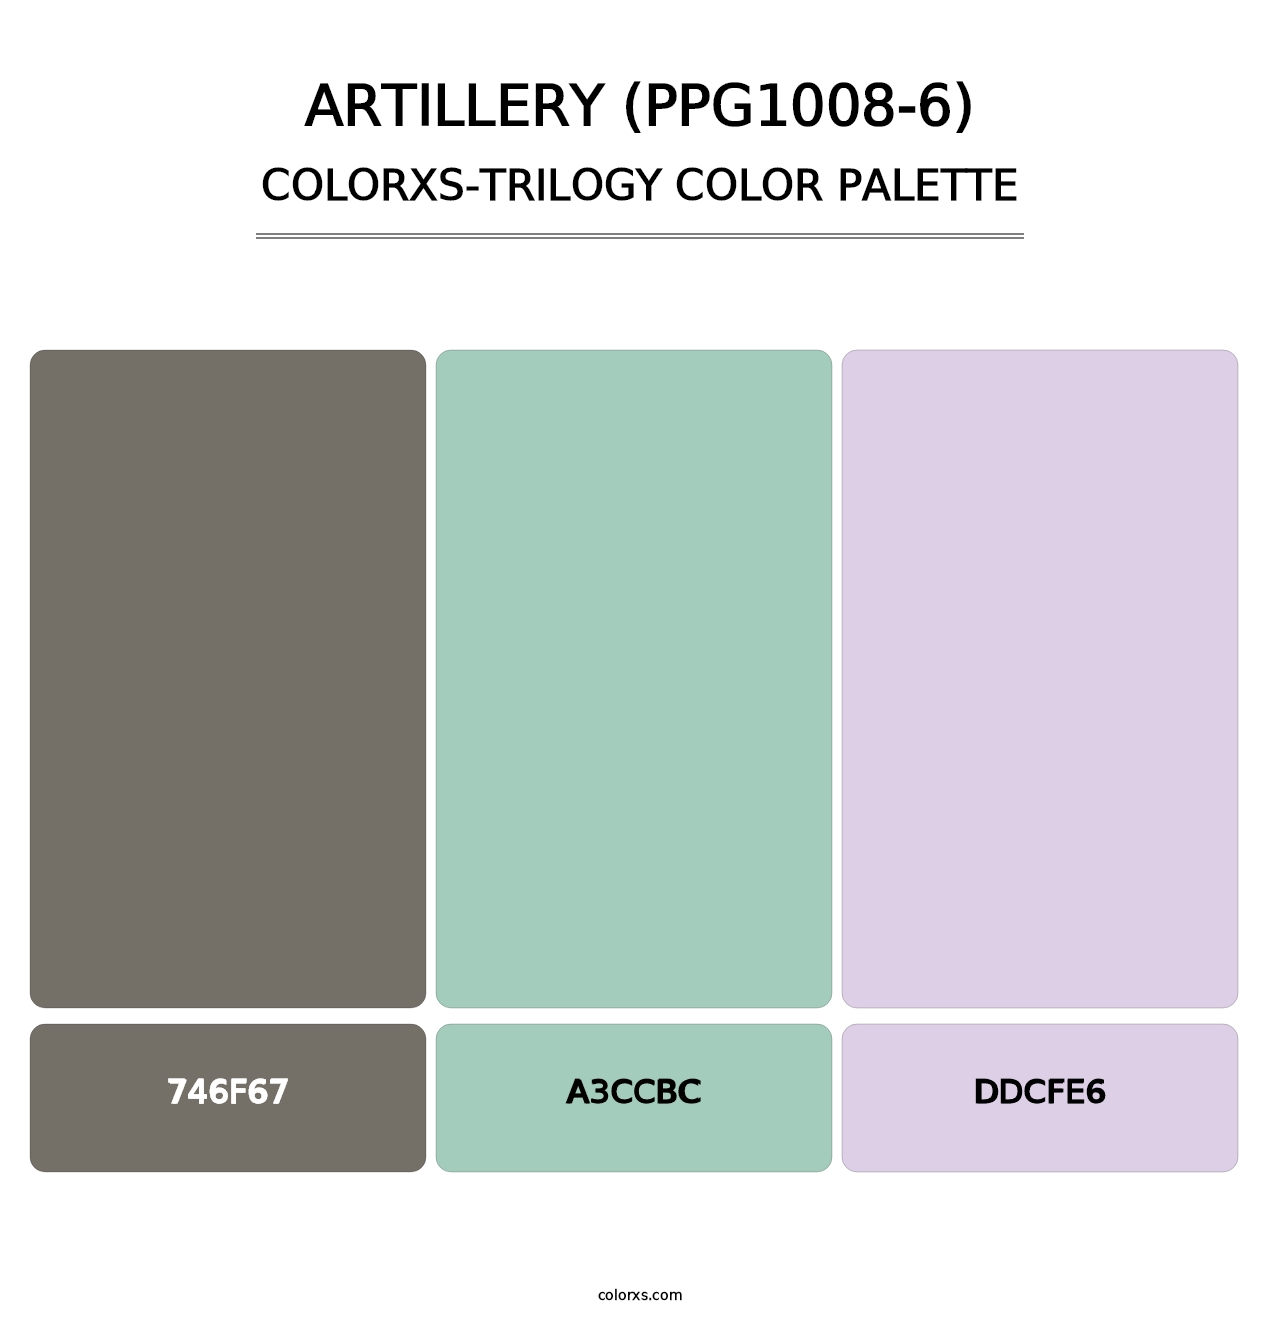 Artillery (PPG1008-6) - Colorxs Trilogy Palette